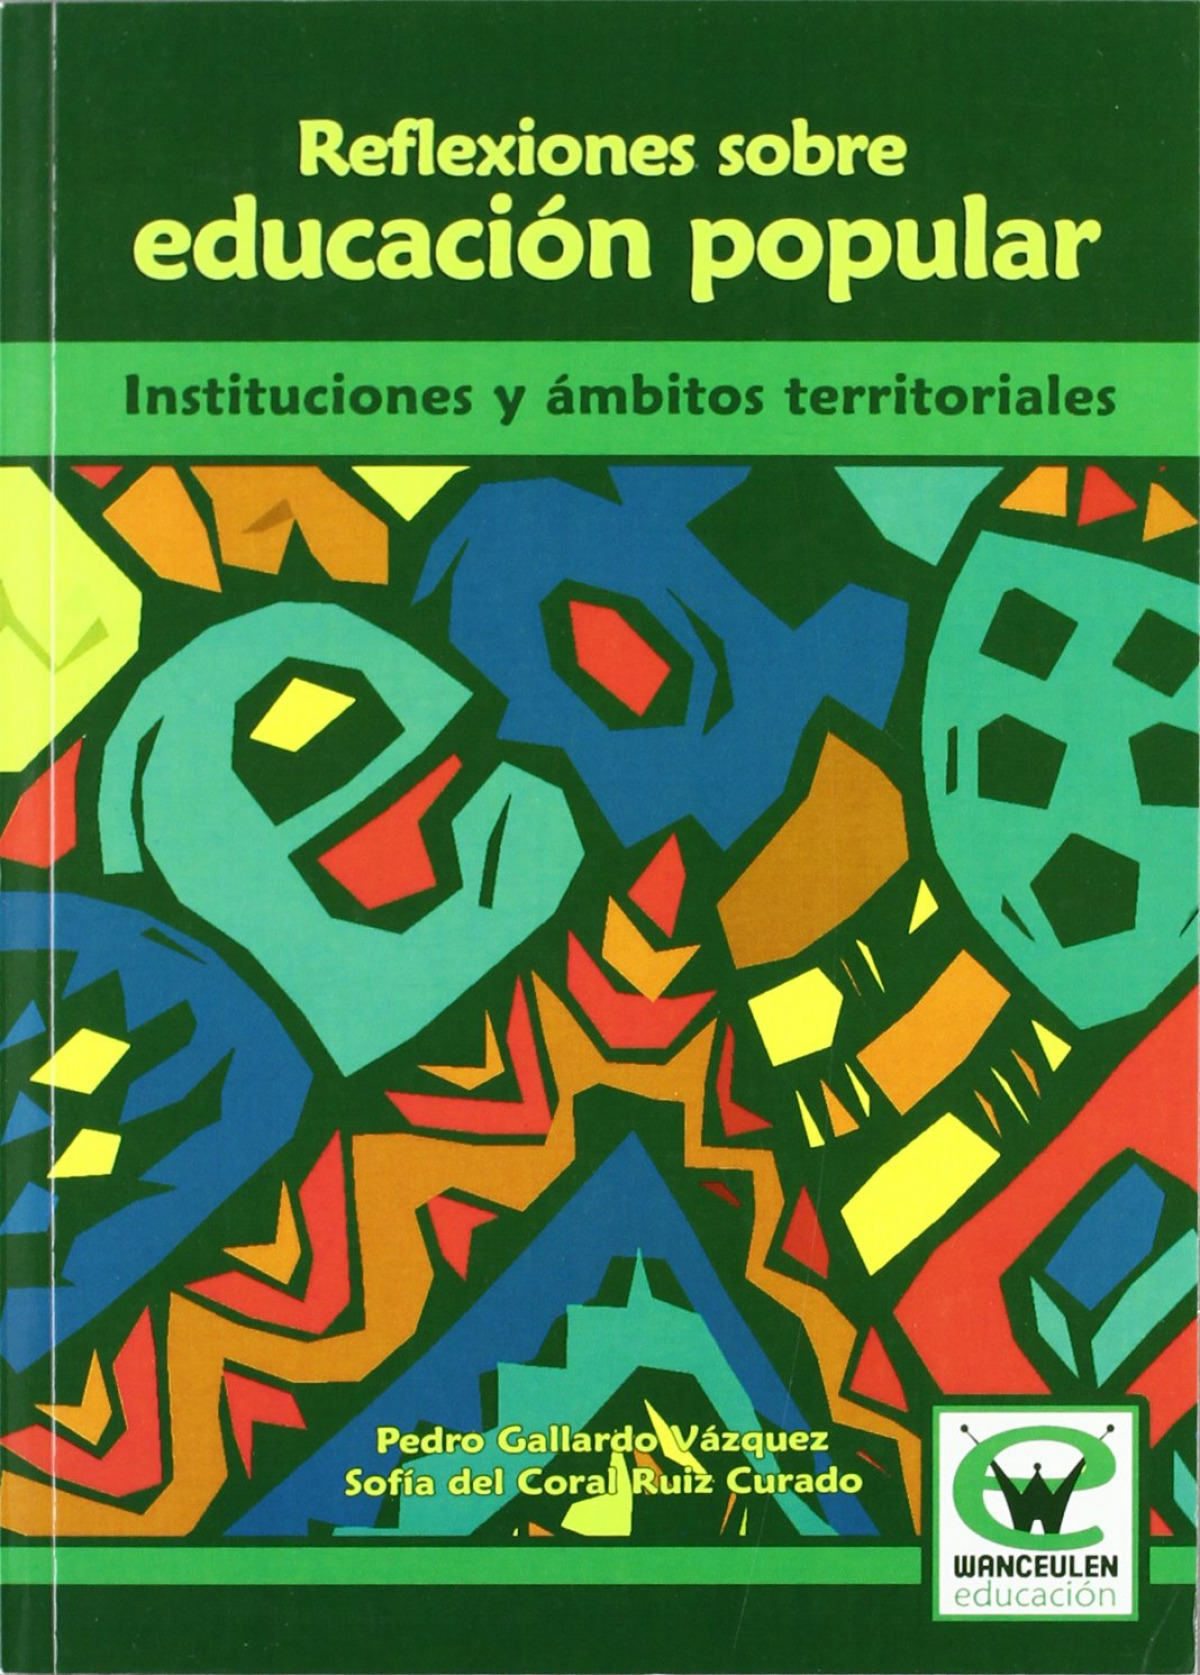 Reflexiones educacion popular - Gallardo, Pedro